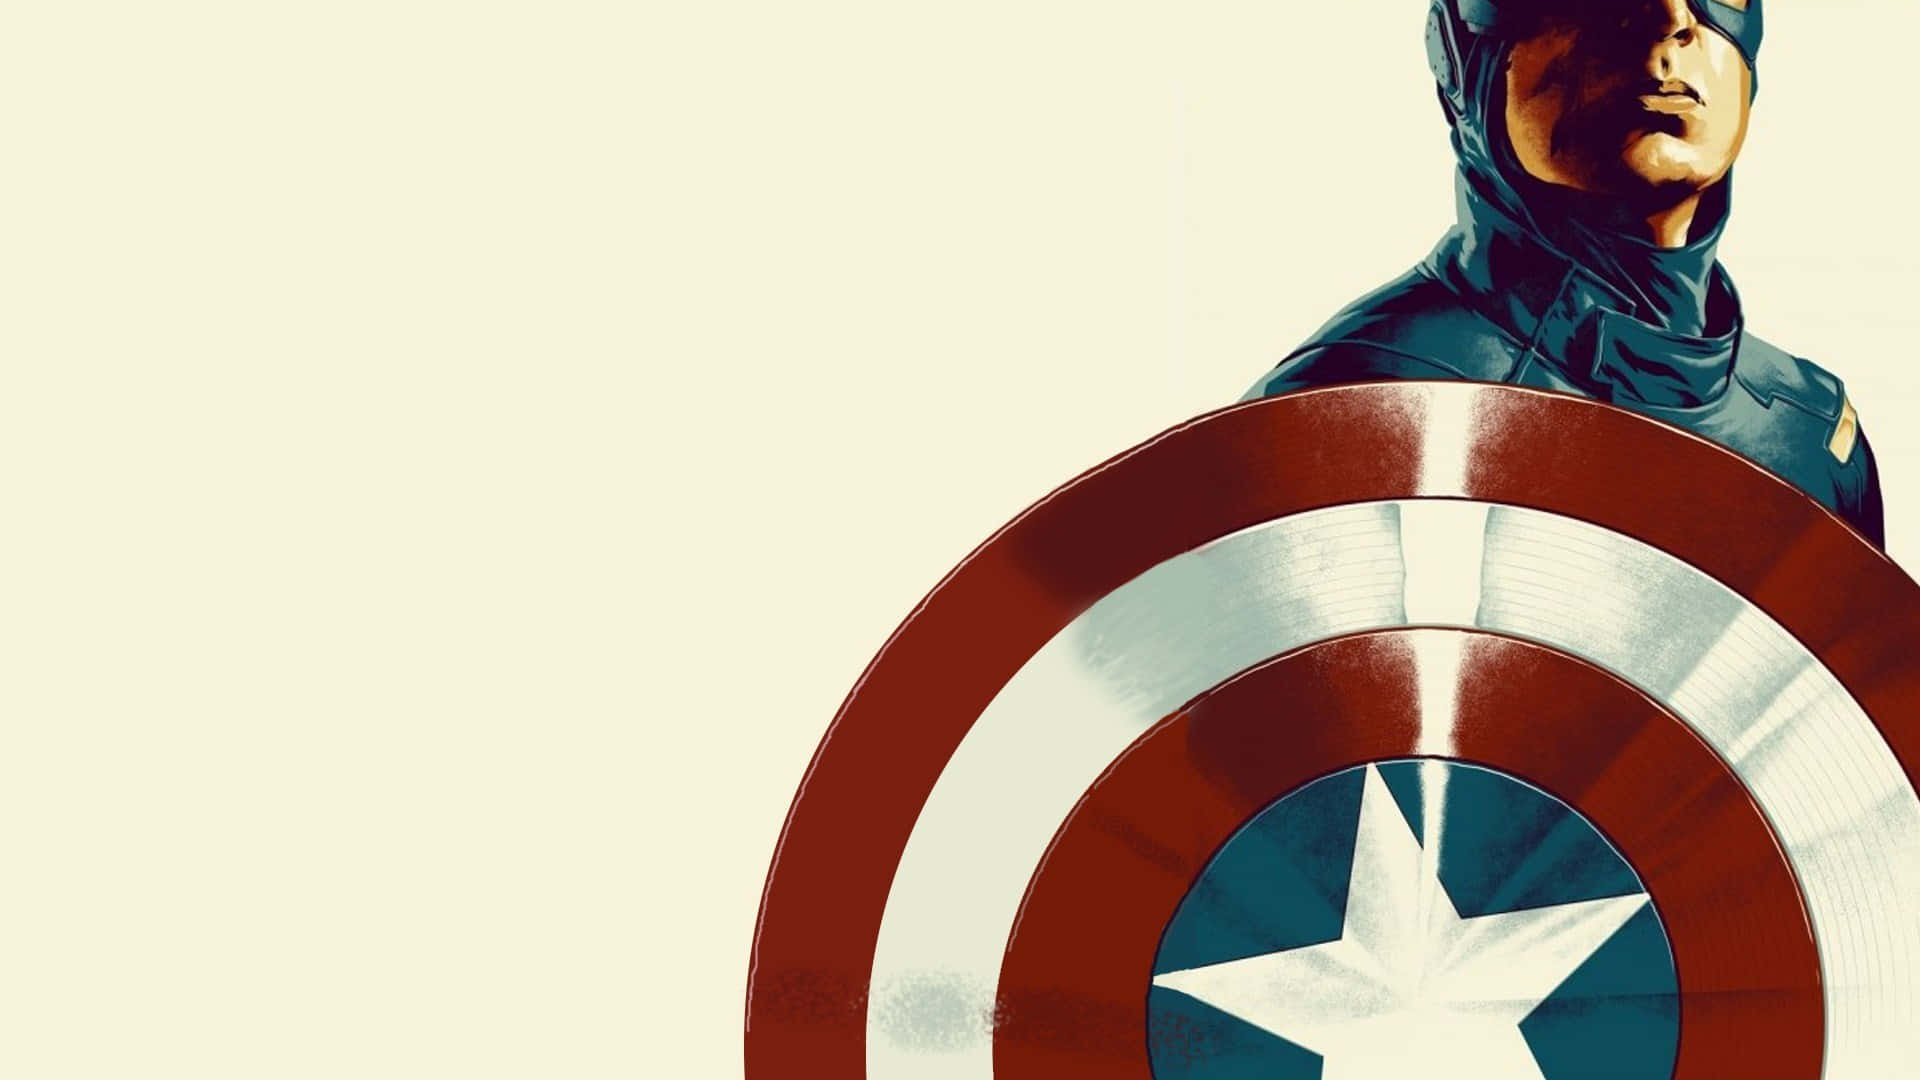 Opret en pose med Marvels legendariske Captain America